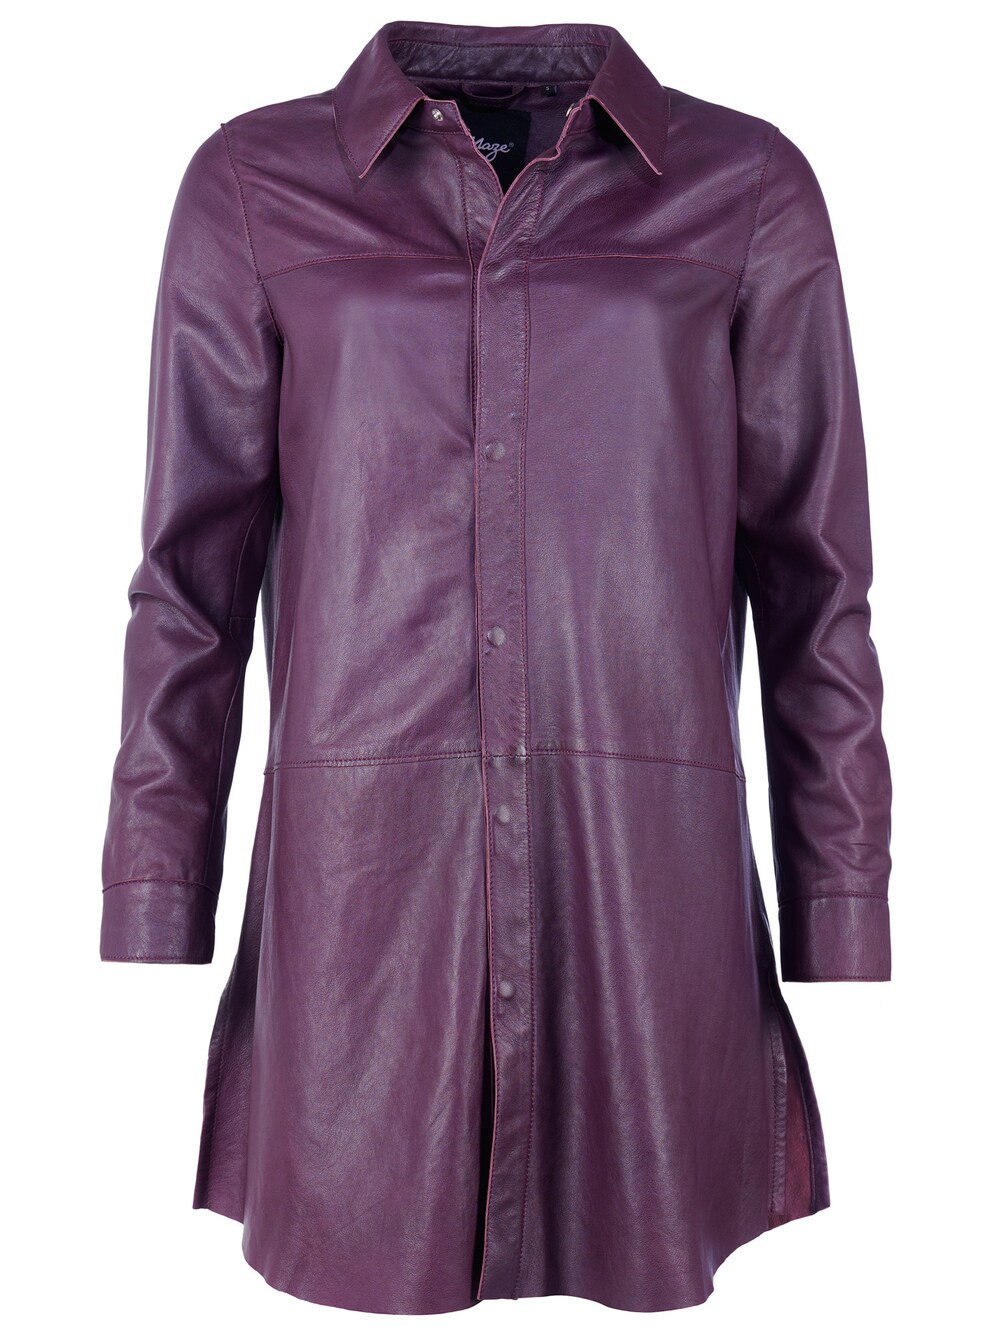 Межсезонная куртка Maze, темно фиолетовый межсезонная куртка maze темно синий